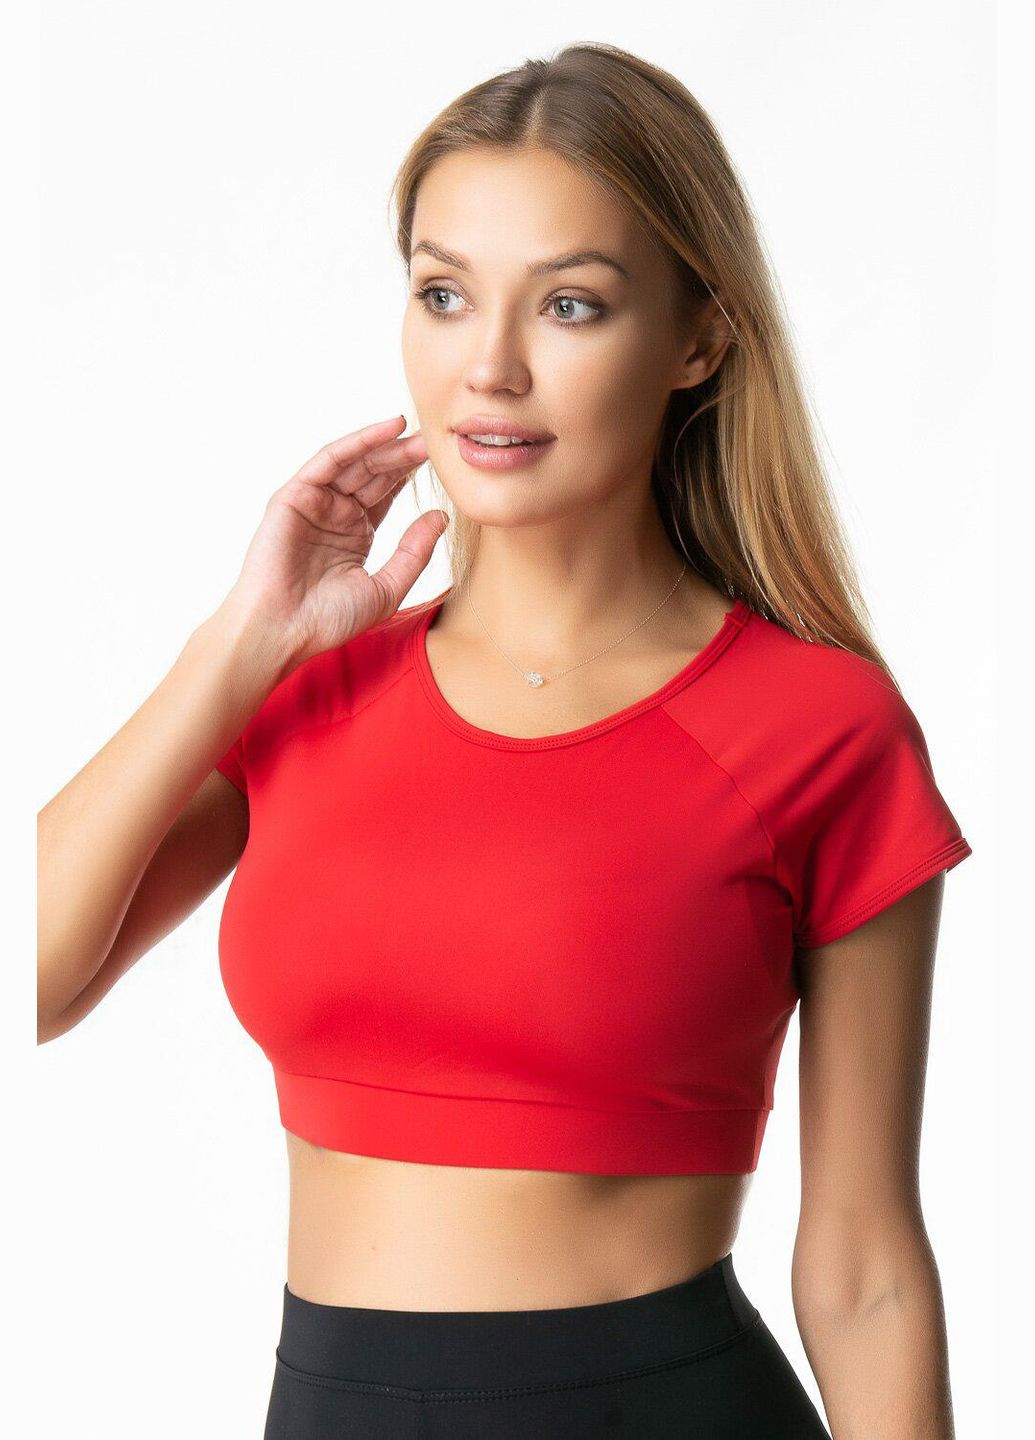 Жіночий спортивний топ-футболка червоний топ для фітнесу з коротким рукавом XS Opt-kolo (286330522)